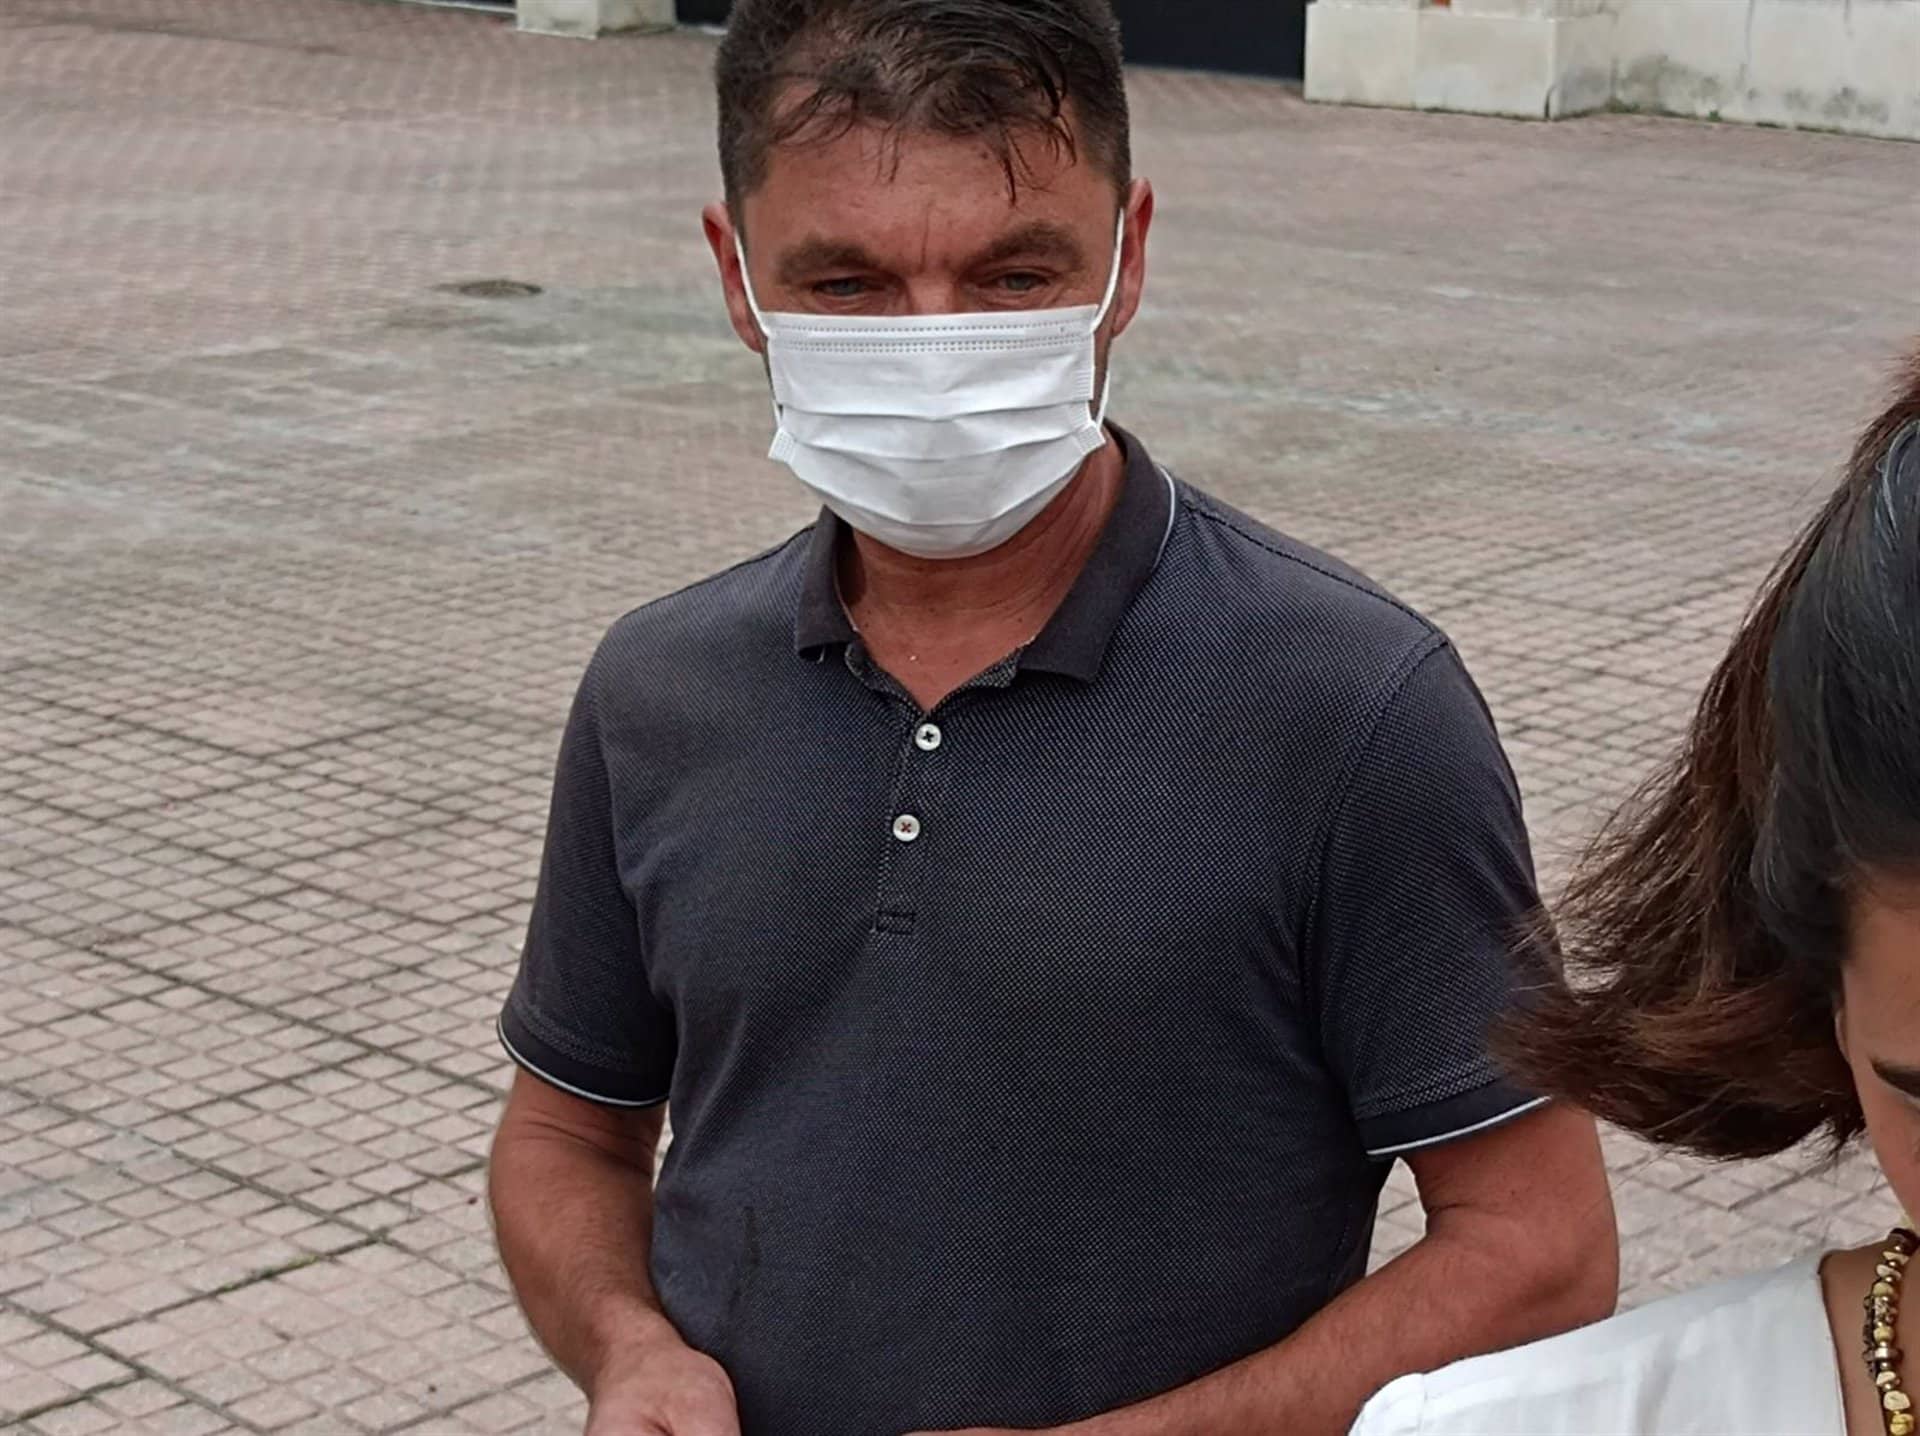 El padre del joven agredido en Amorebieta afirma que su estado es "muy grave", pero los médicos son "optimistas"